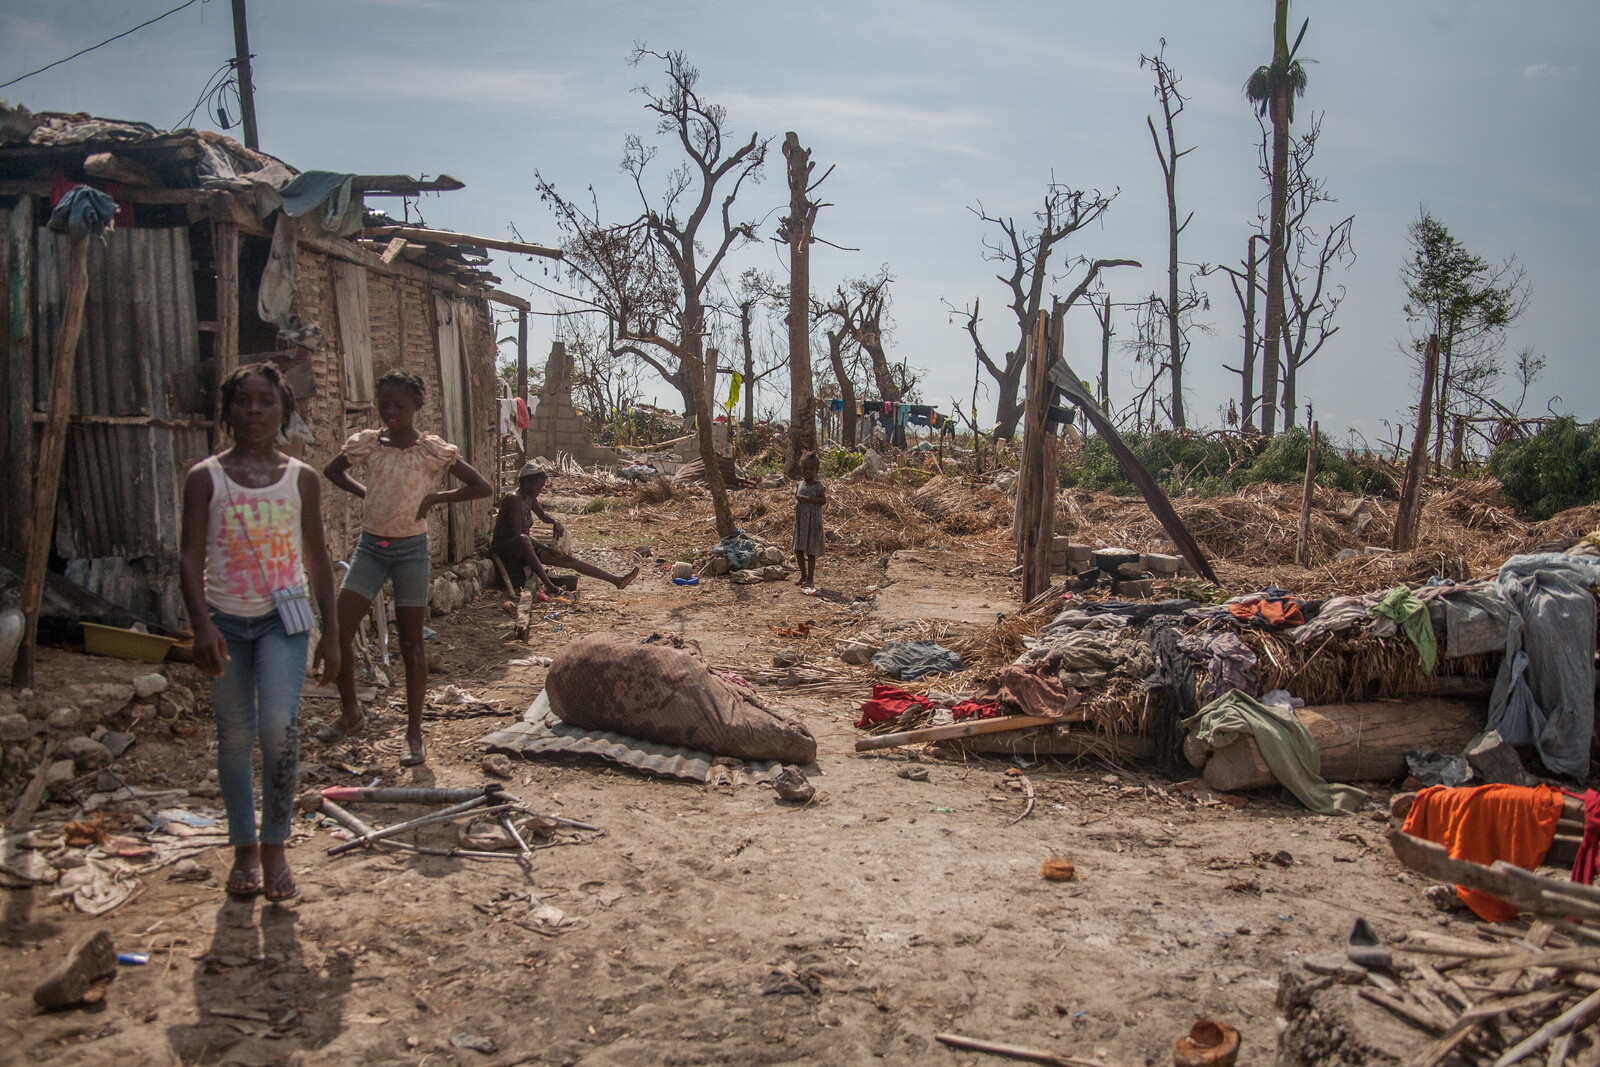 Die Menschen stehen nicht zum ersten Mal hilflos einer Katastrophe gegenüber: Schon das Erdbeben 2010 hinterließ das Land in einem desolaten Zustand.